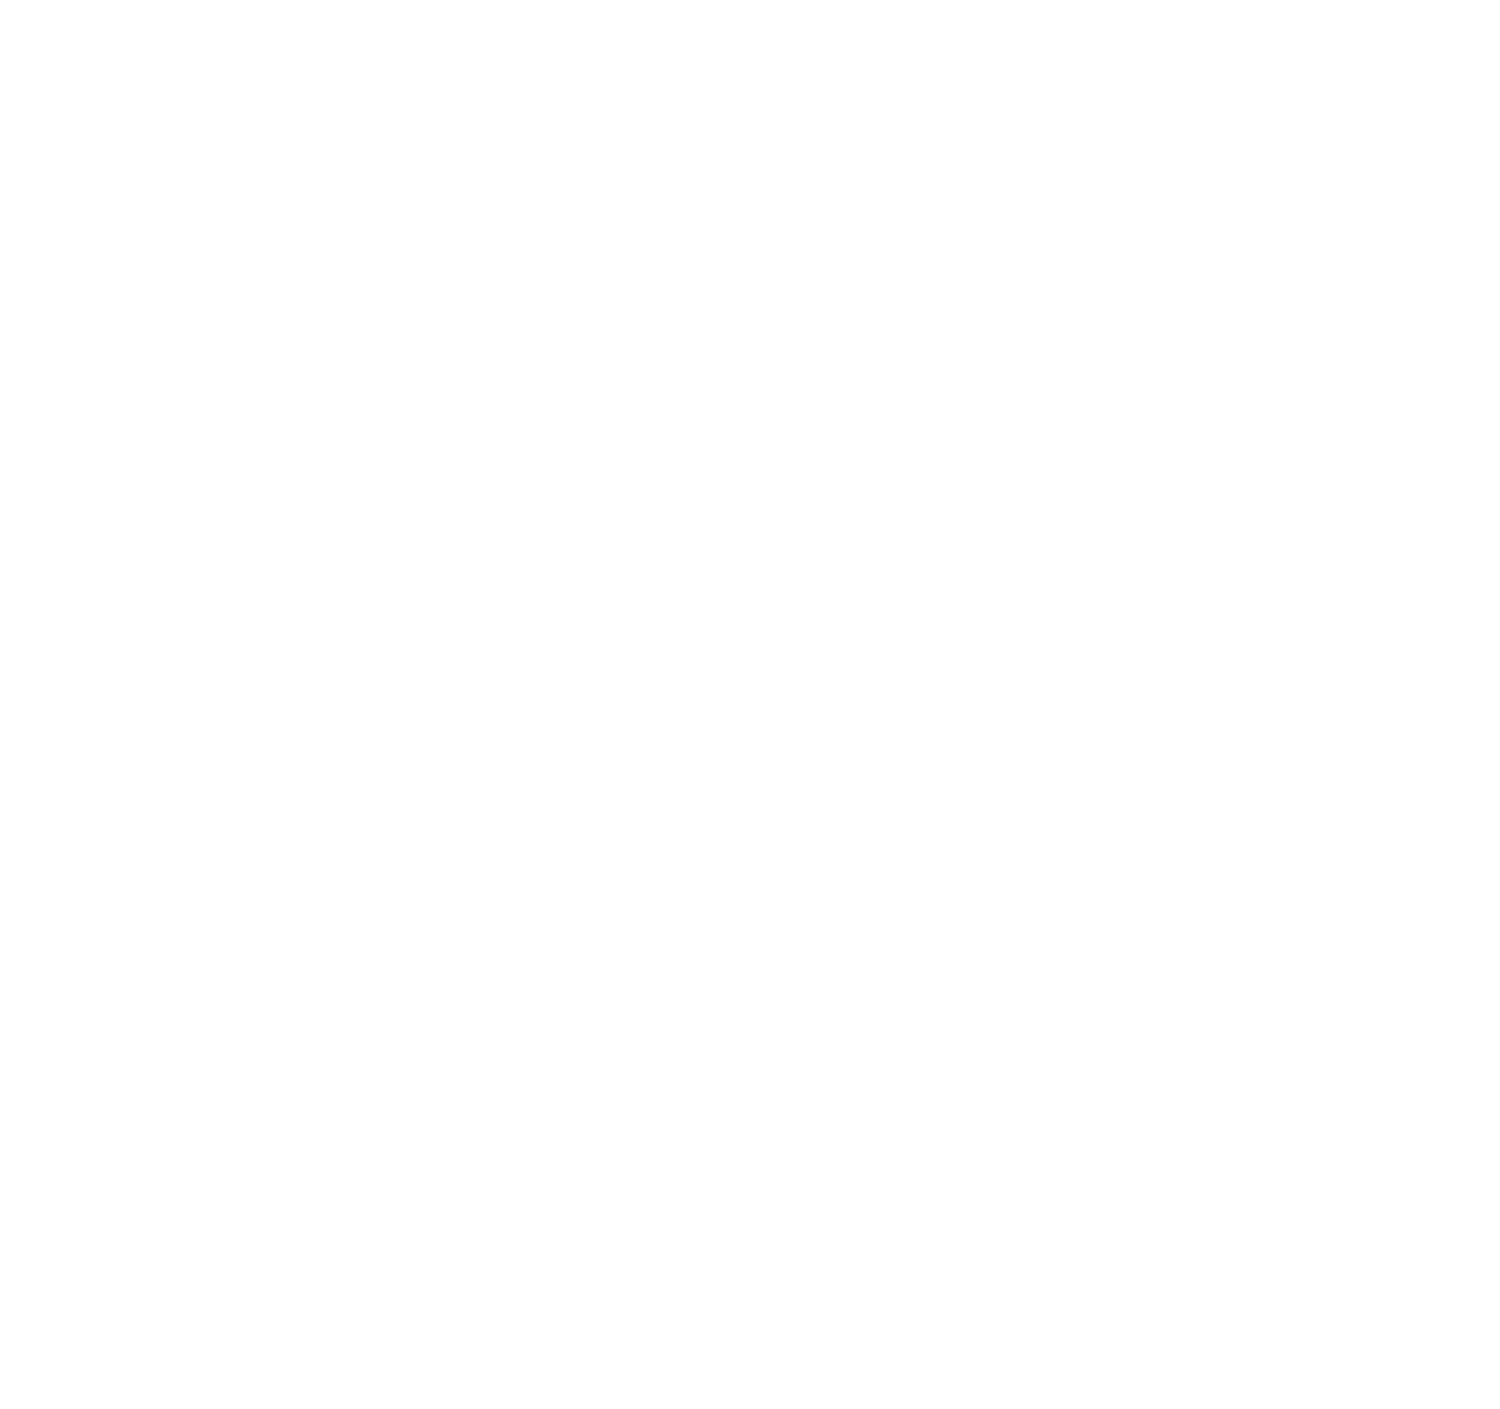 Nancy Volpe Beringer